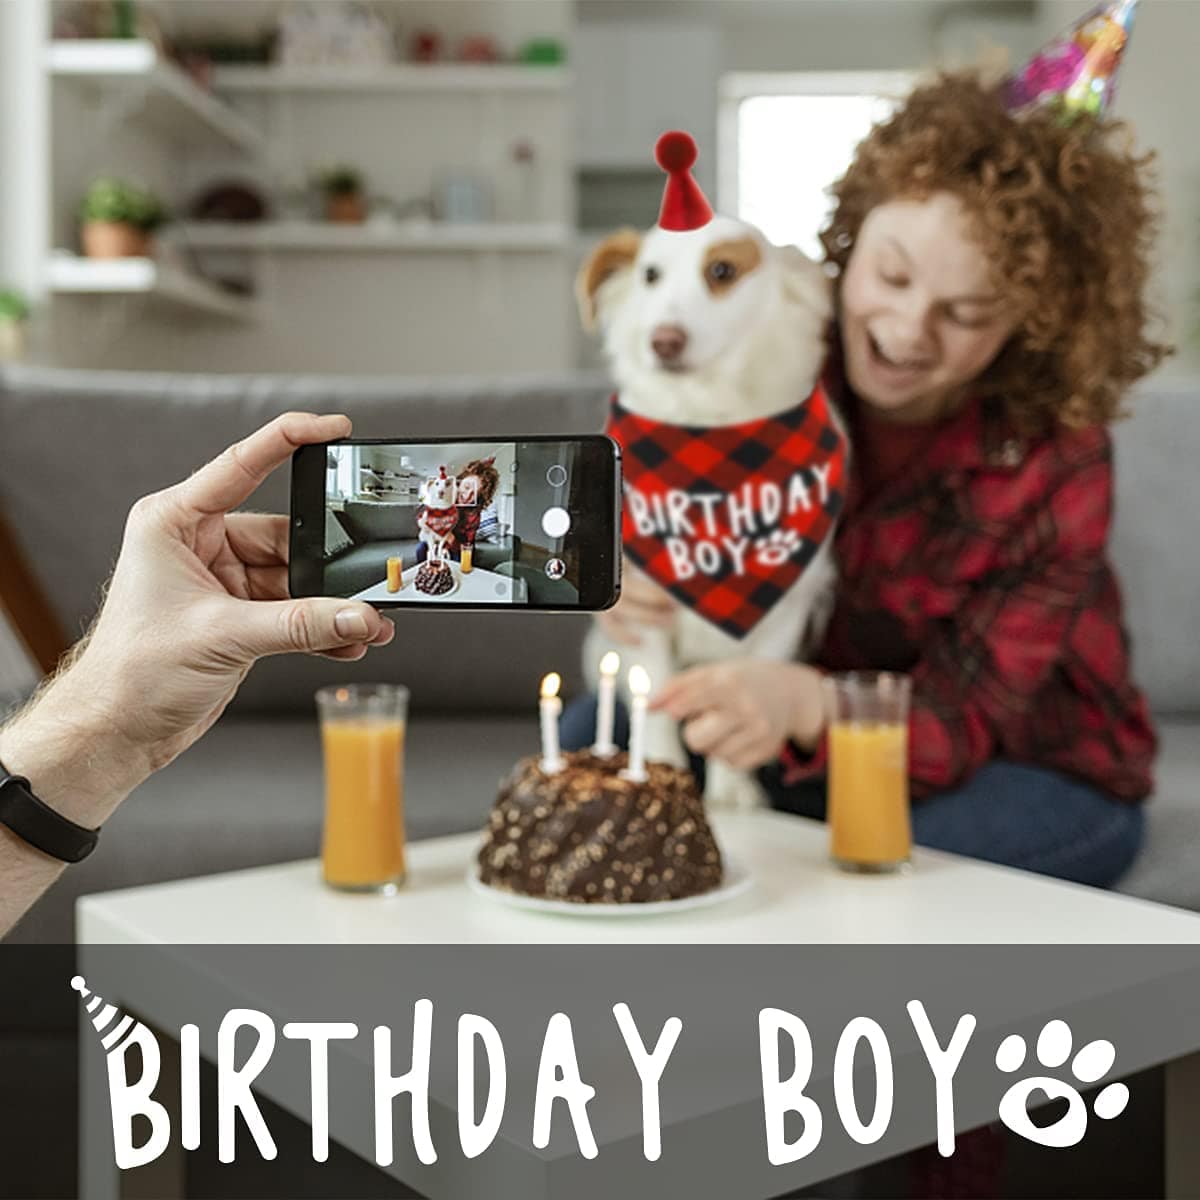 KUTKUT Boy Bandana and Hat Set “Birthday Boy” Print Plaid Dogs Party Supplies Triangle Scarf Bibs for Small Medium Large Pets Red - kutkutstyle